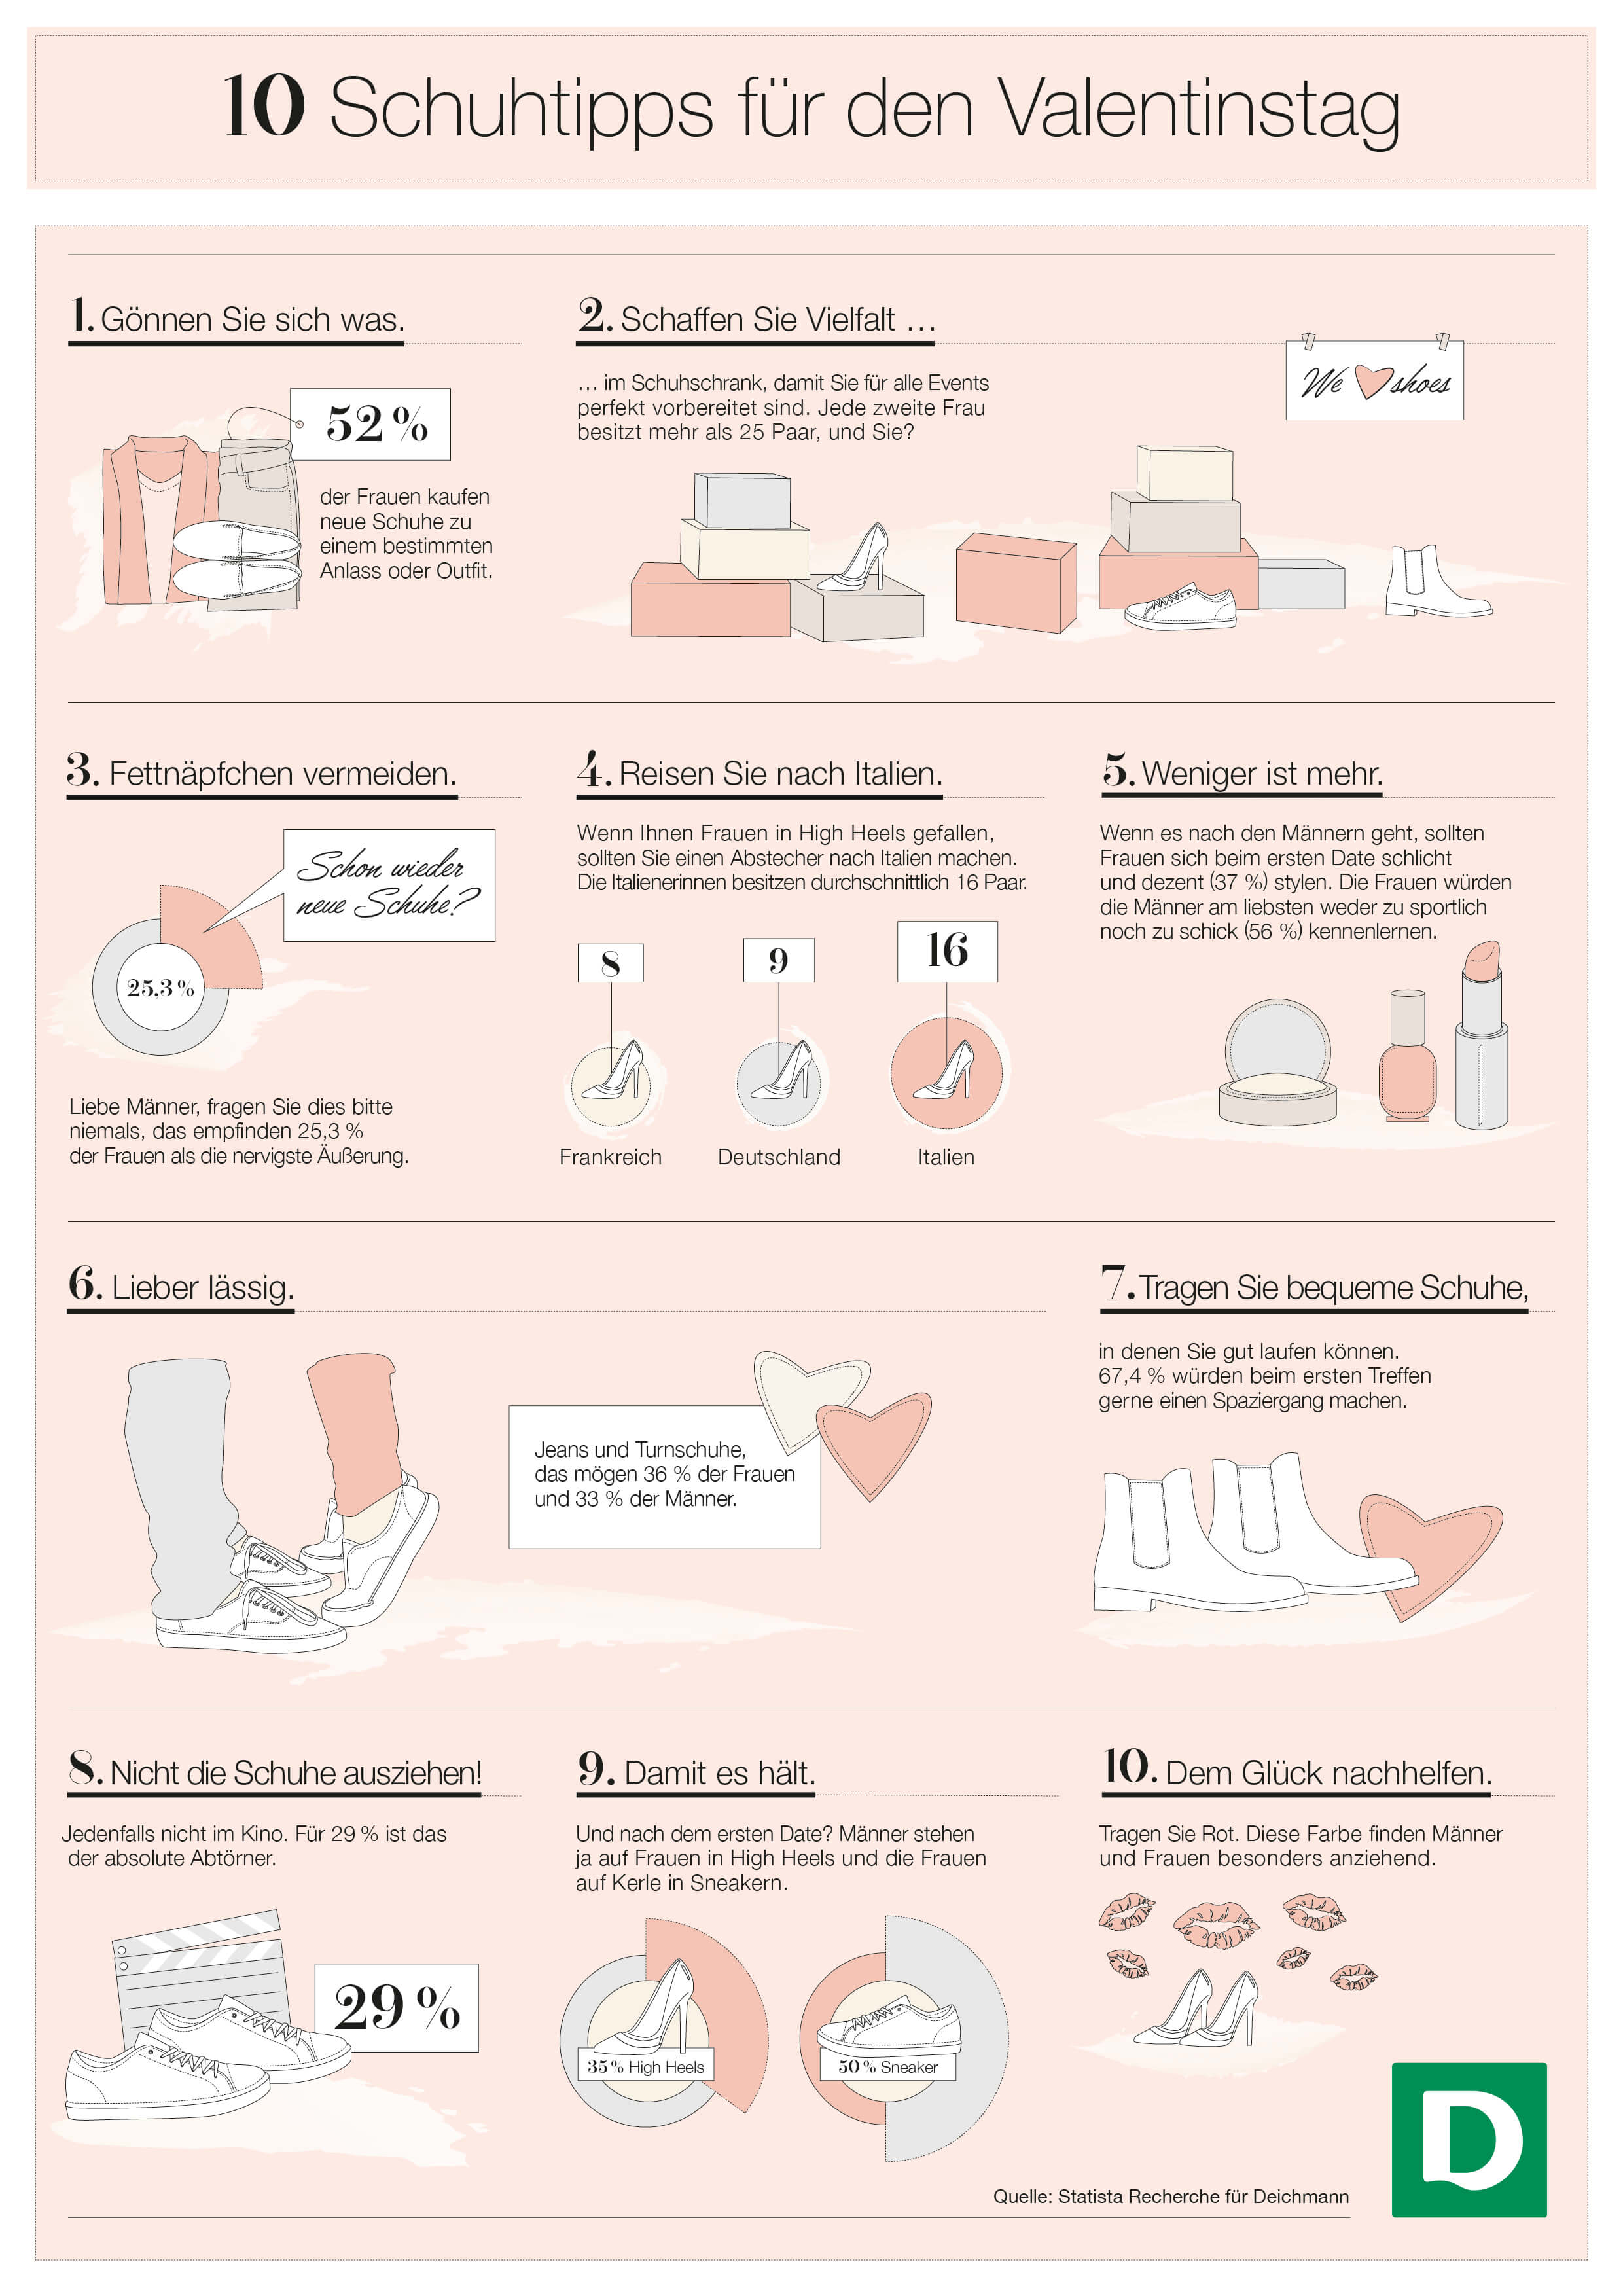 10 Schuhtipps für den Valentintstag - Infografik